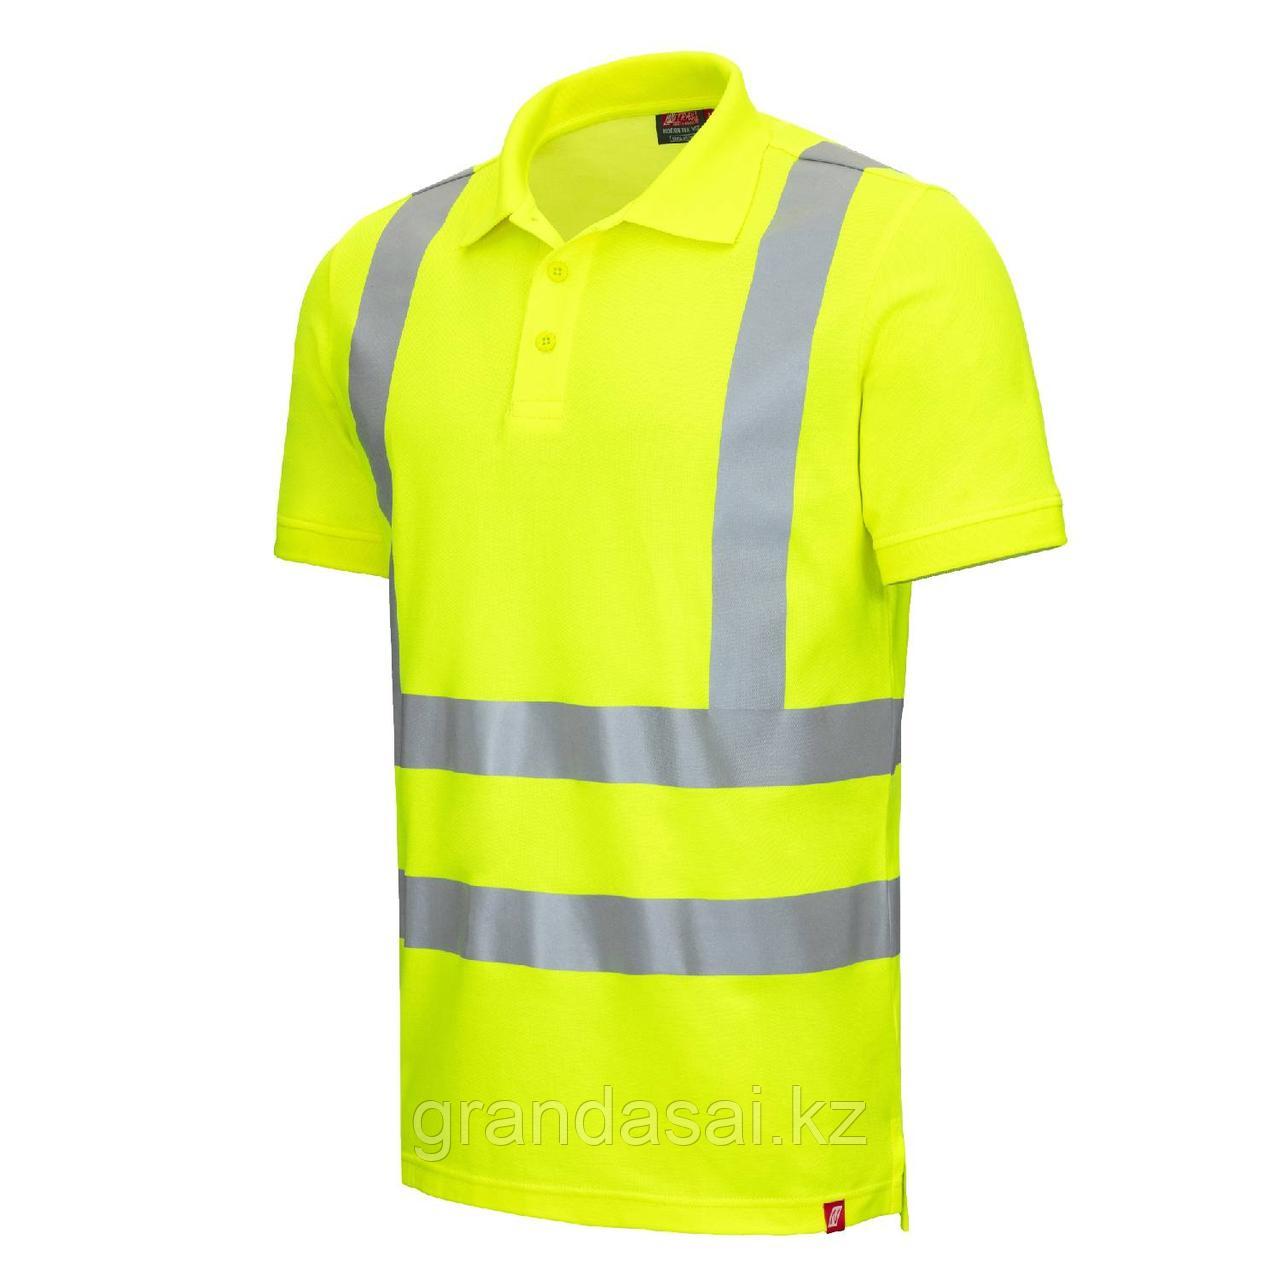 NITRAS 7013 рубашка поло повышенной видимости, короткий рукав, желтый